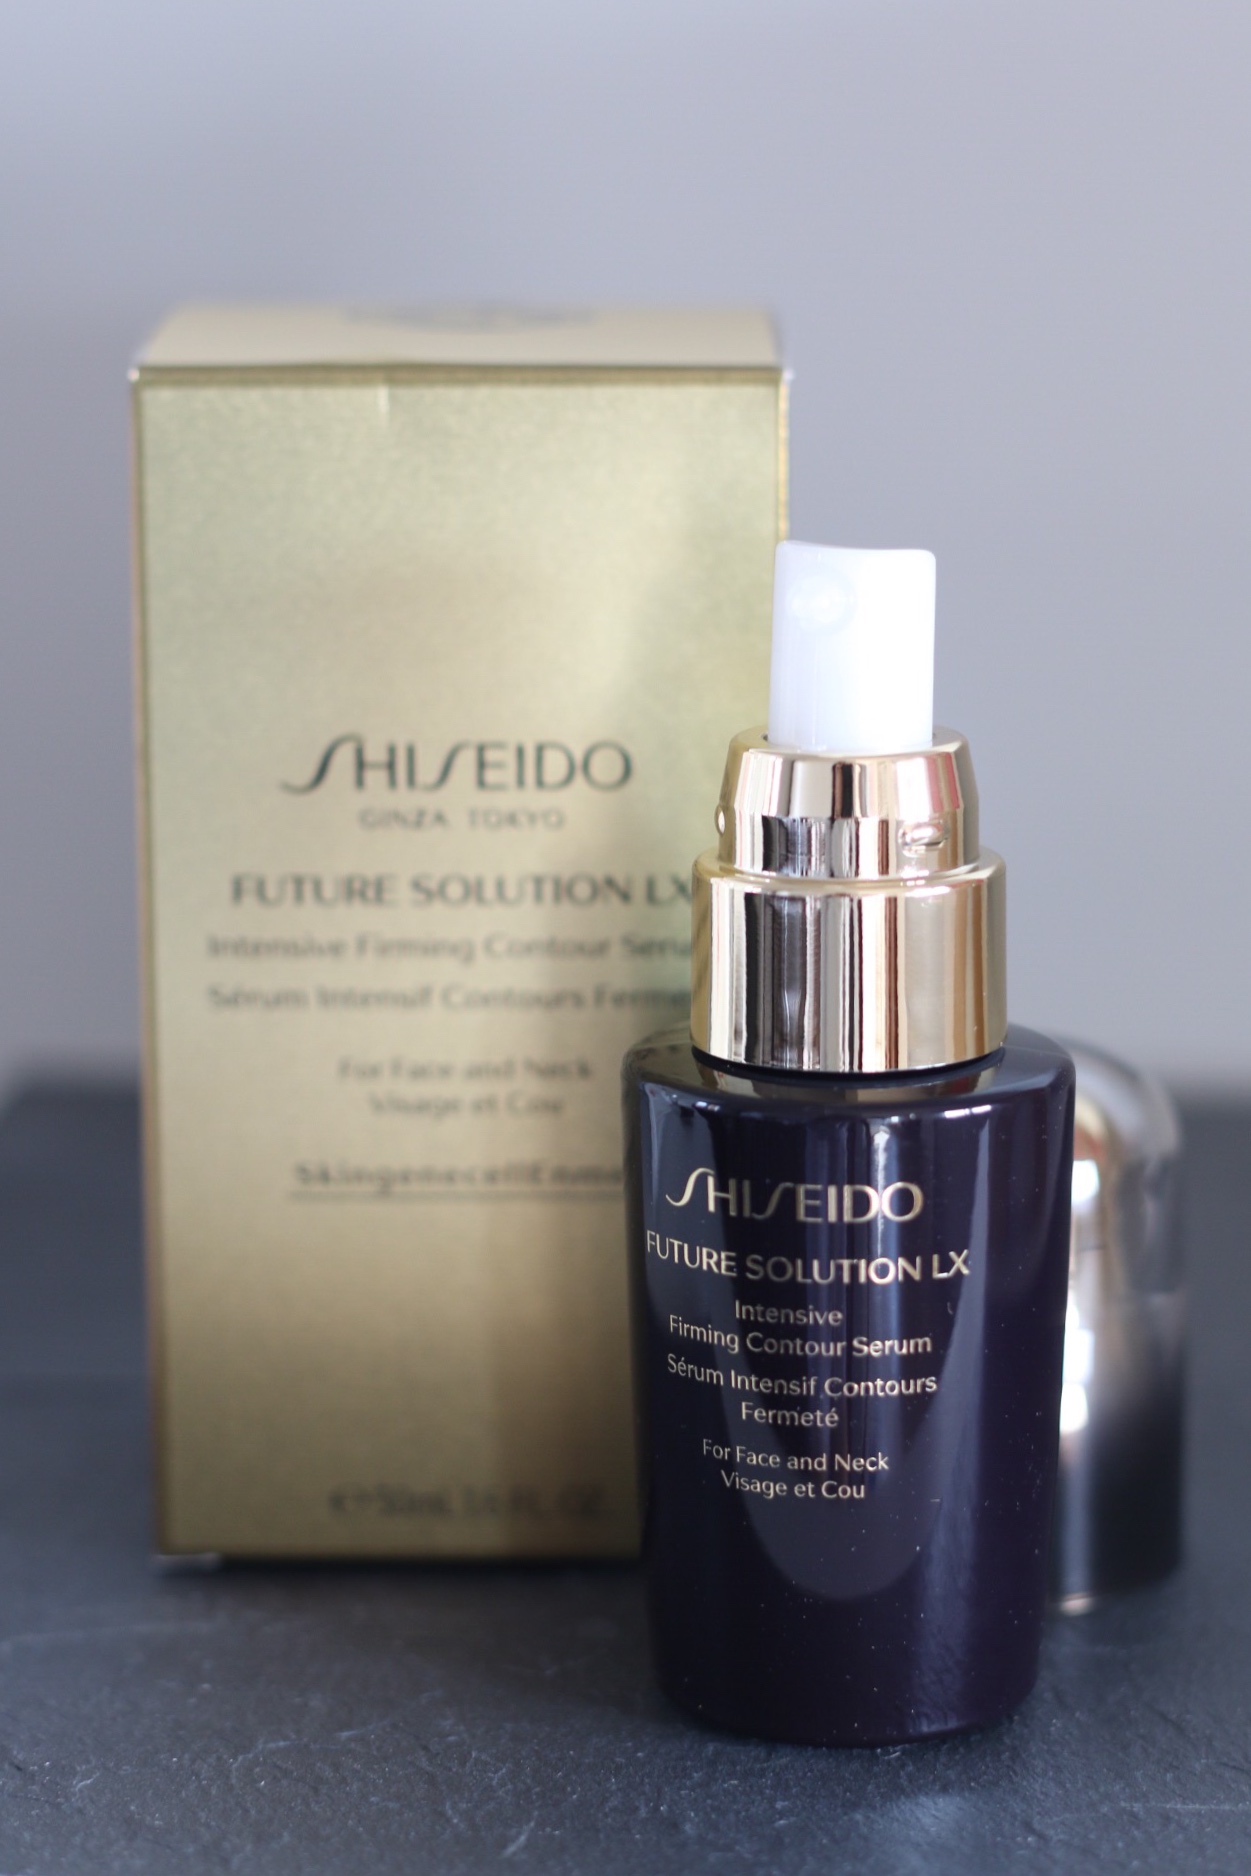 shiseido_future